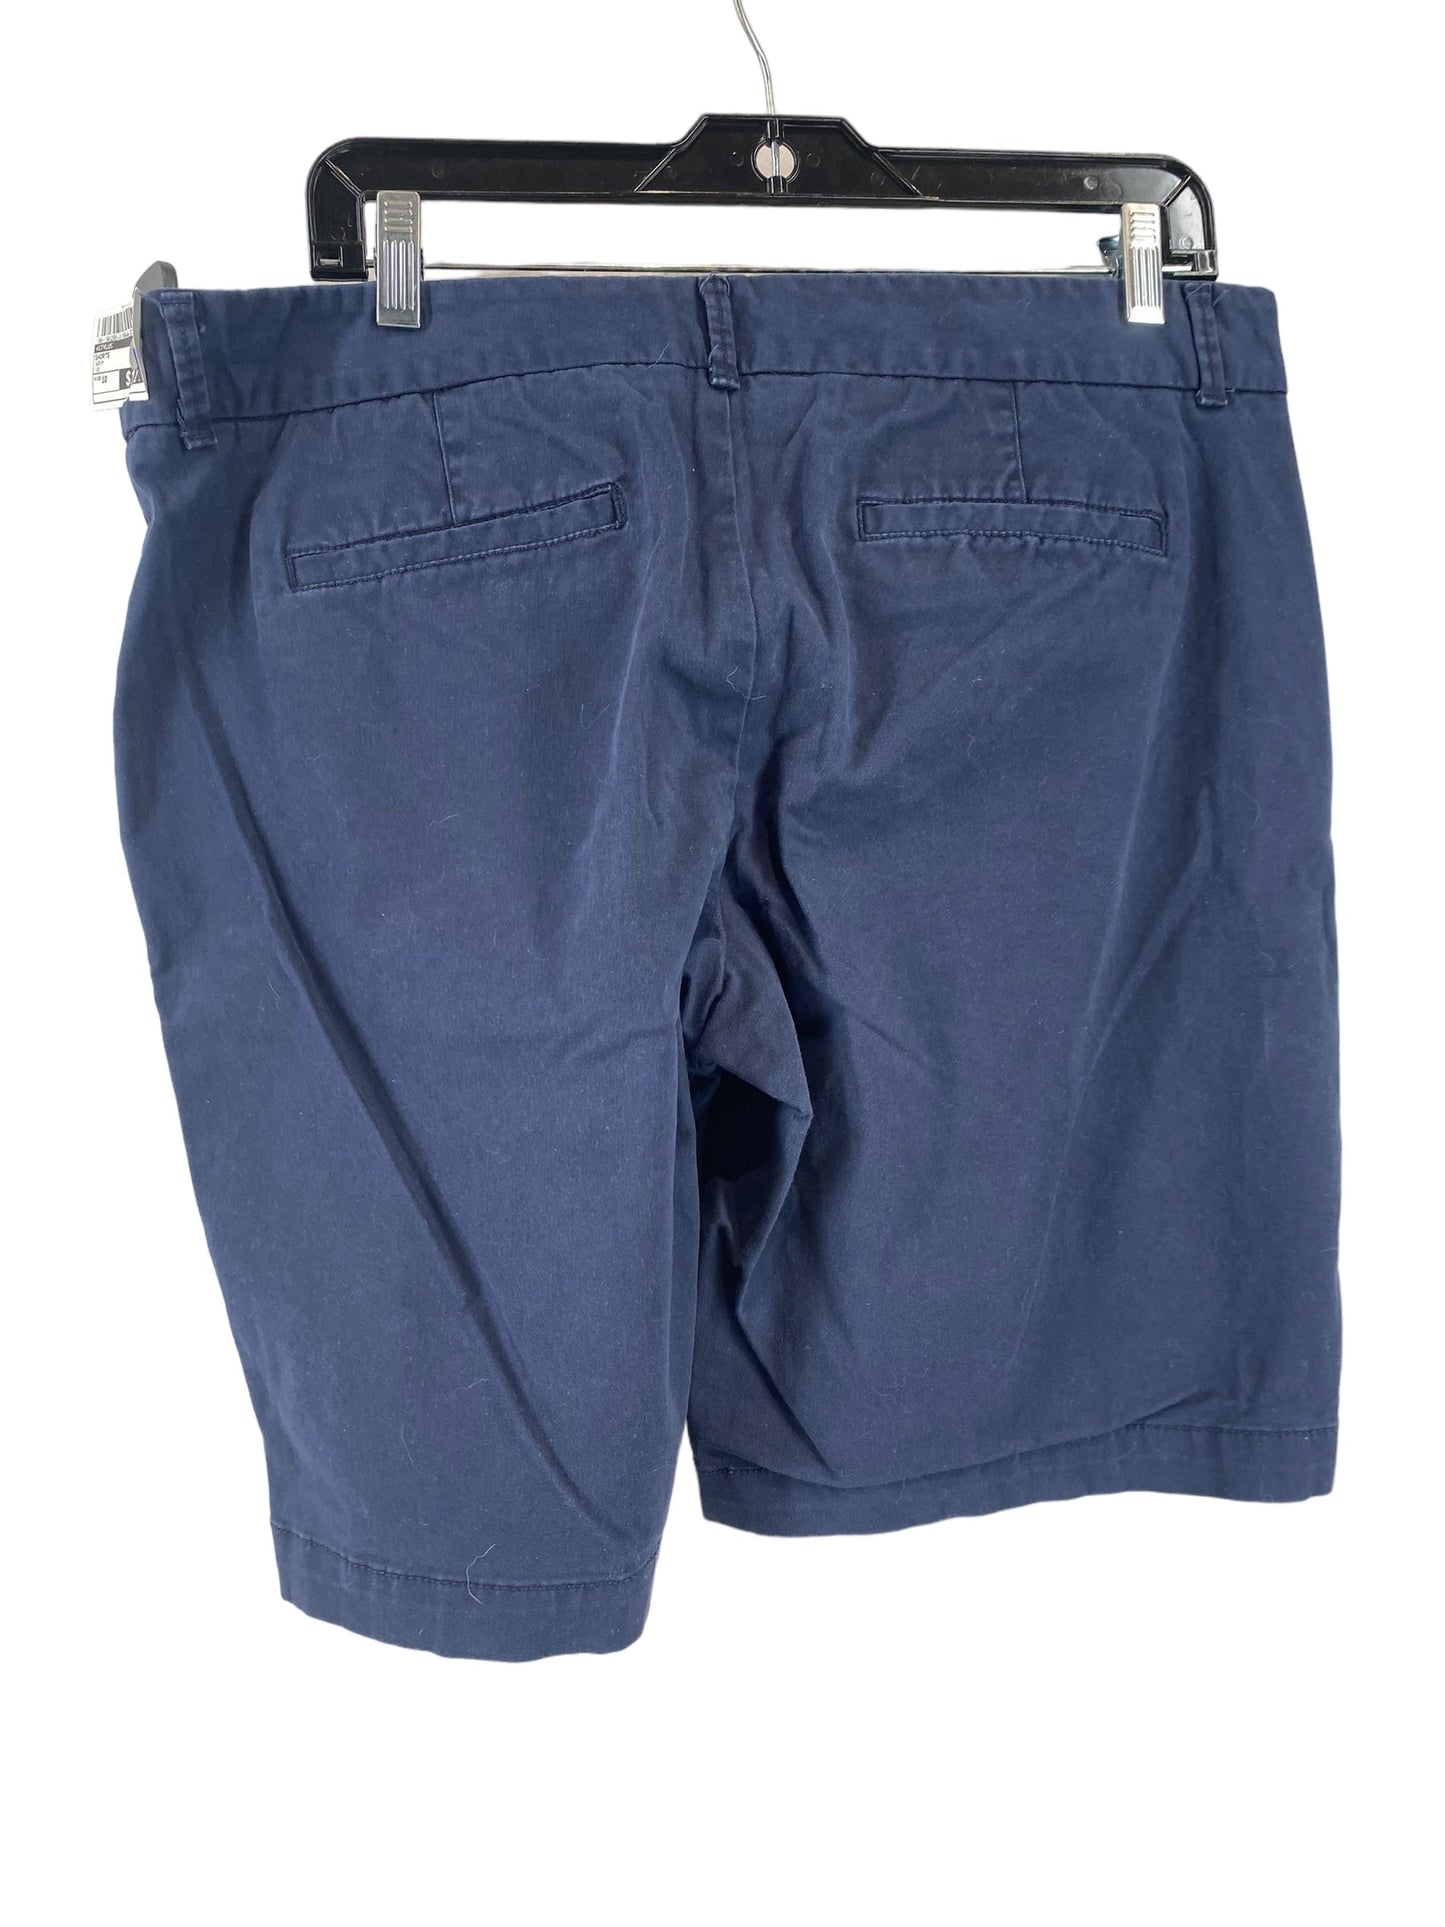 Navy Shorts Stylus, Size 10